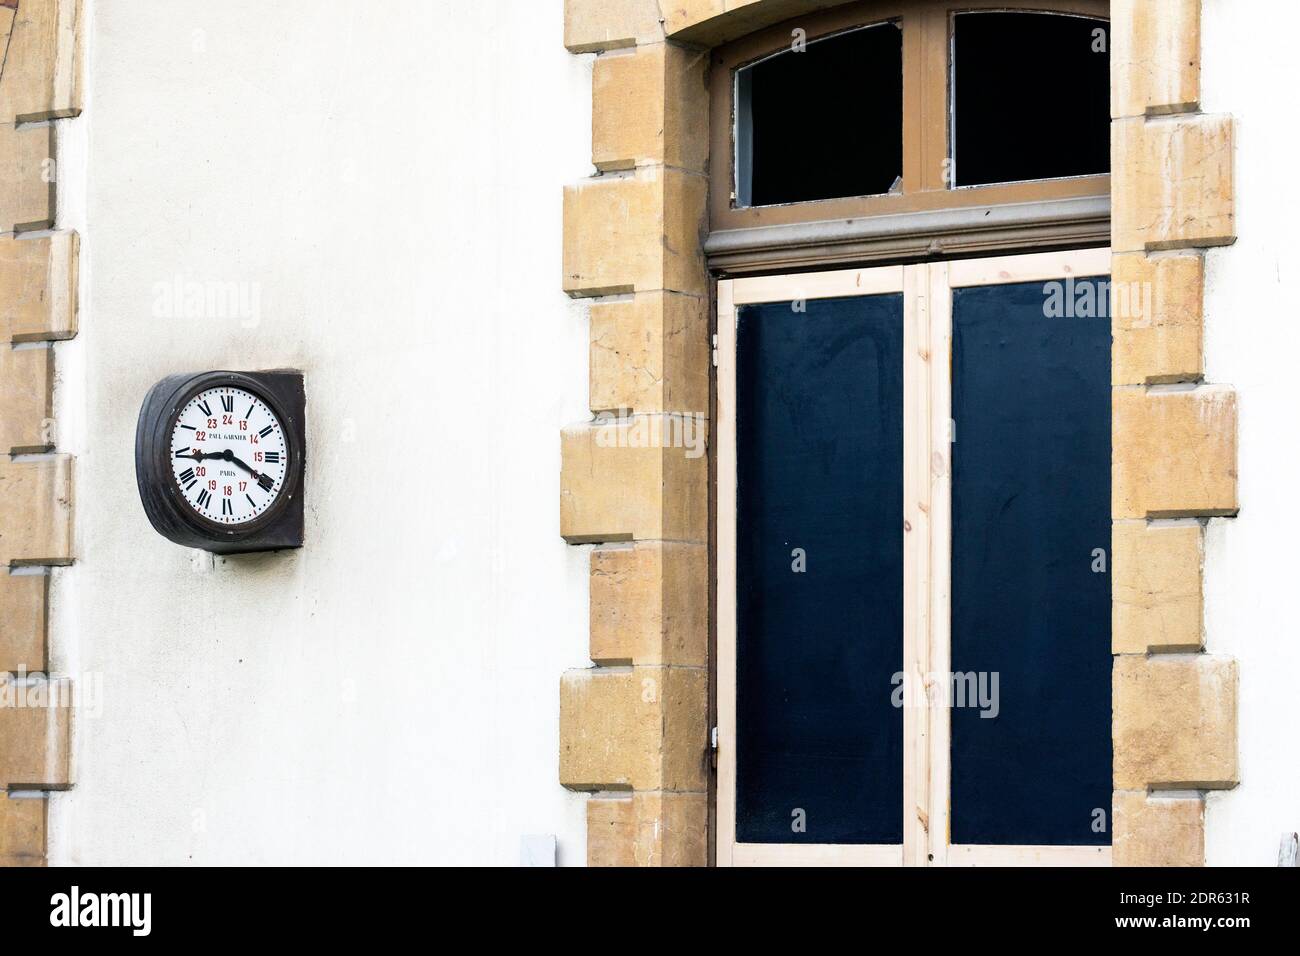 L'horloge de l'ancien Paul Garnier se trouve dans la gare abandonnée de Beyrouth, Mar Mikhael, Liban Banque D'Images